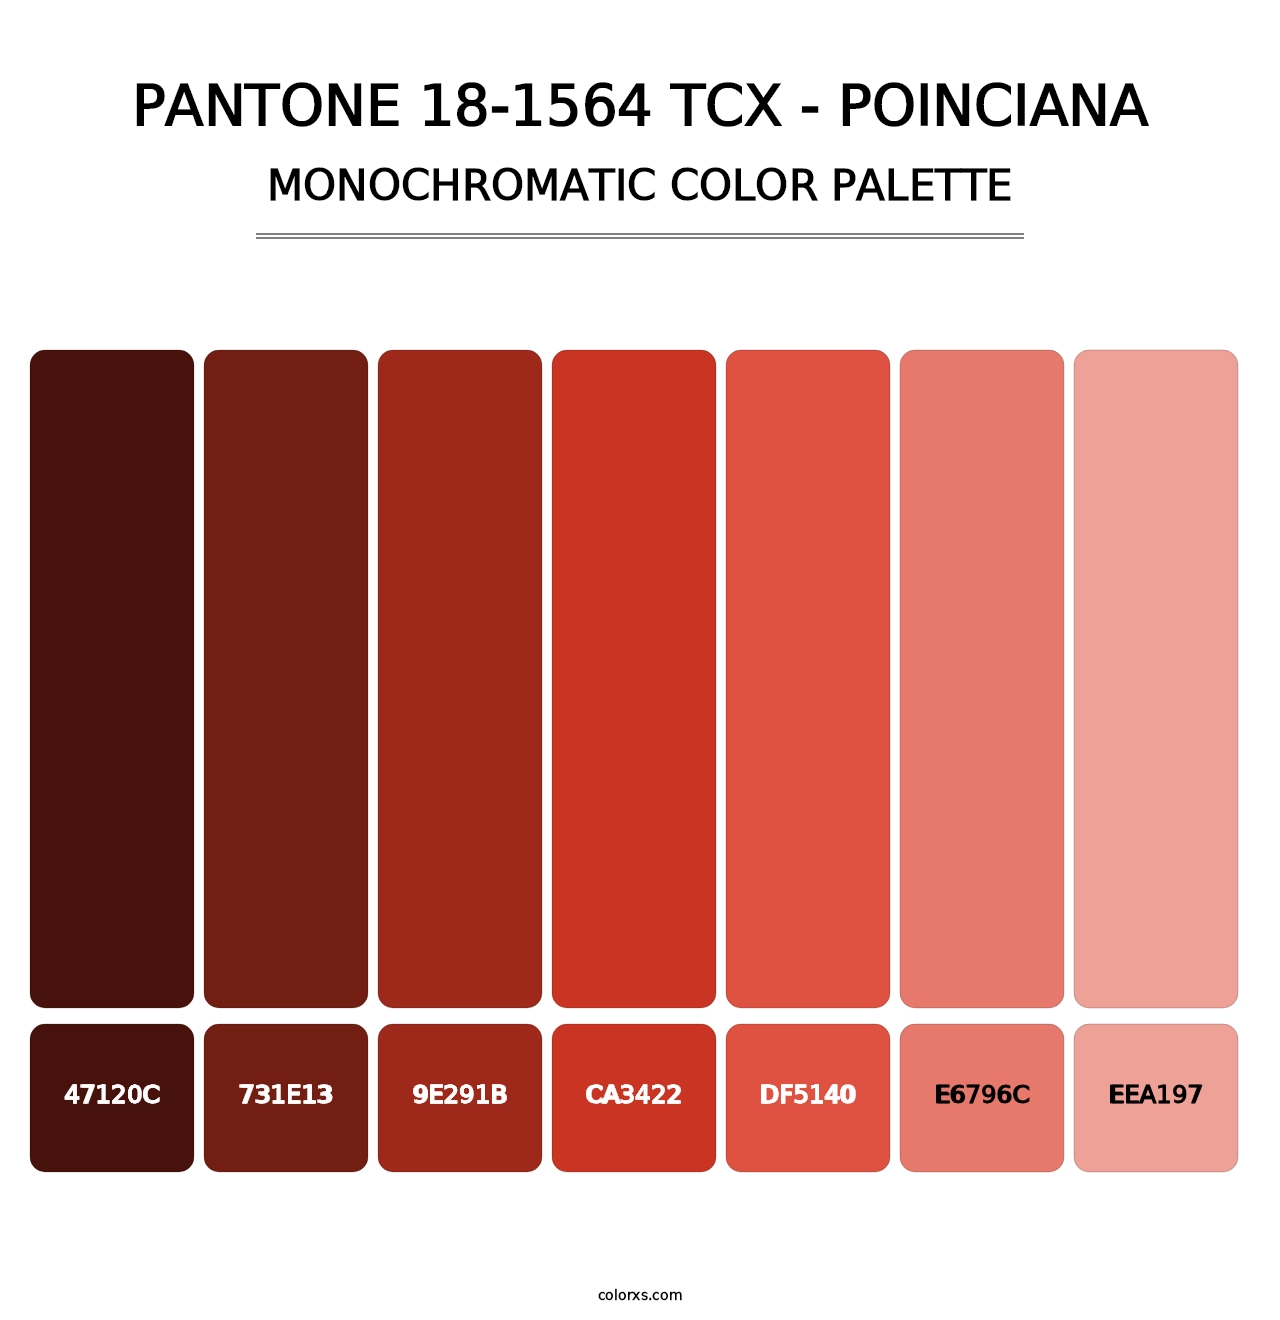 PANTONE 18-1564 TCX - Poinciana - Monochromatic Color Palette